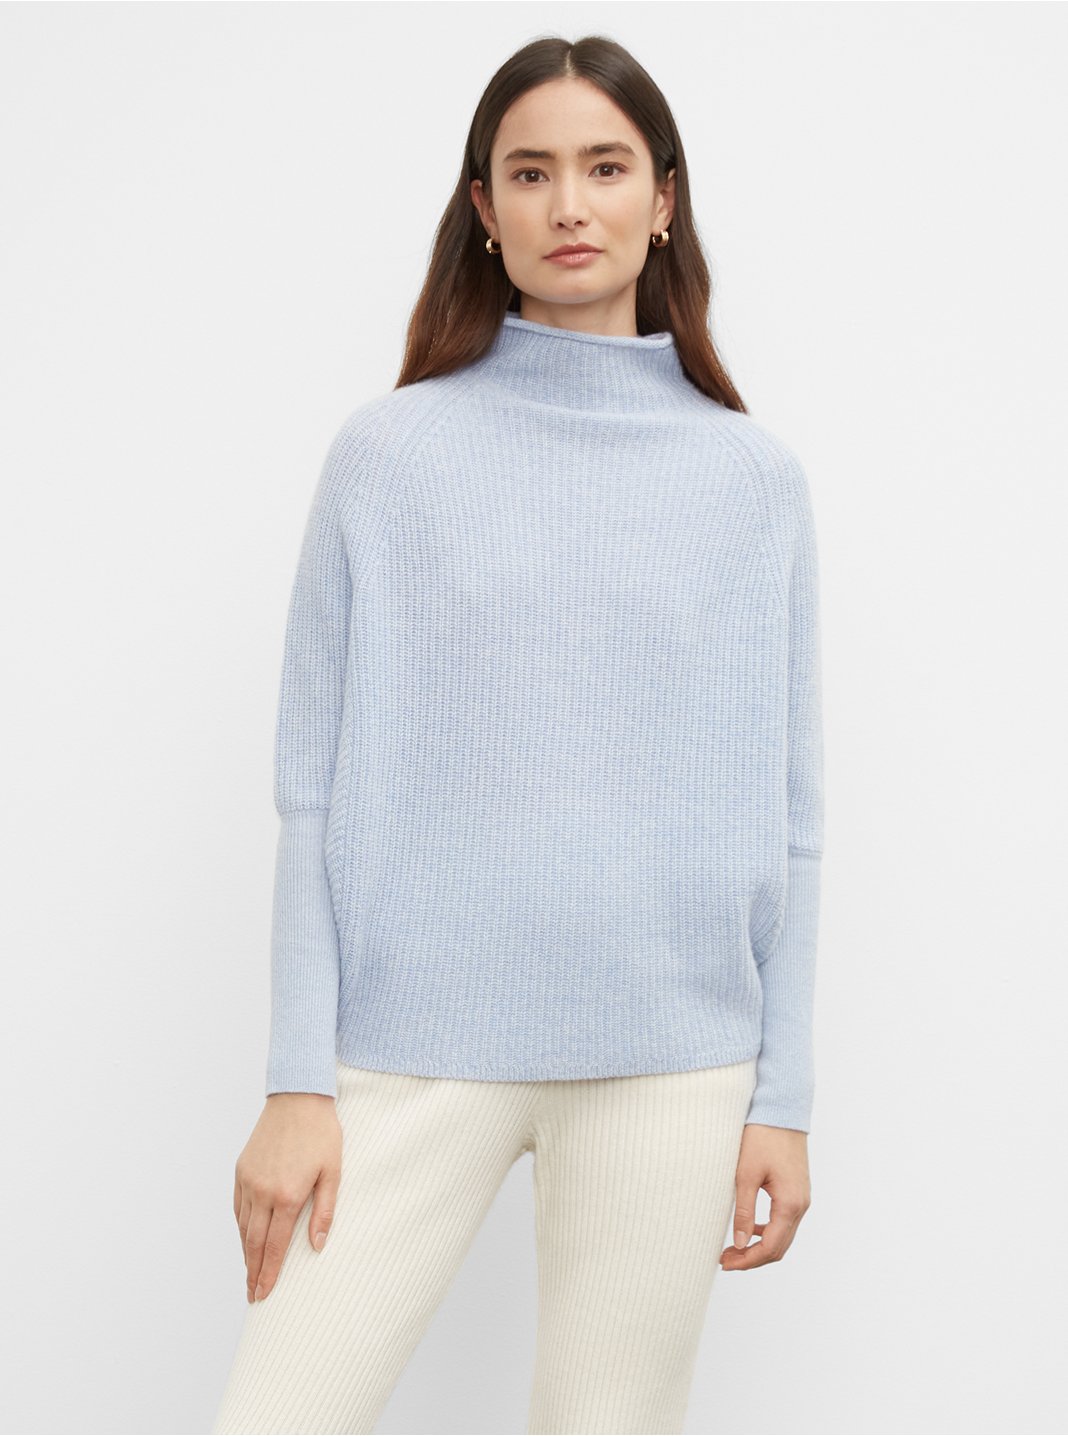 Clubmonaco Emma Cashmere Sweater